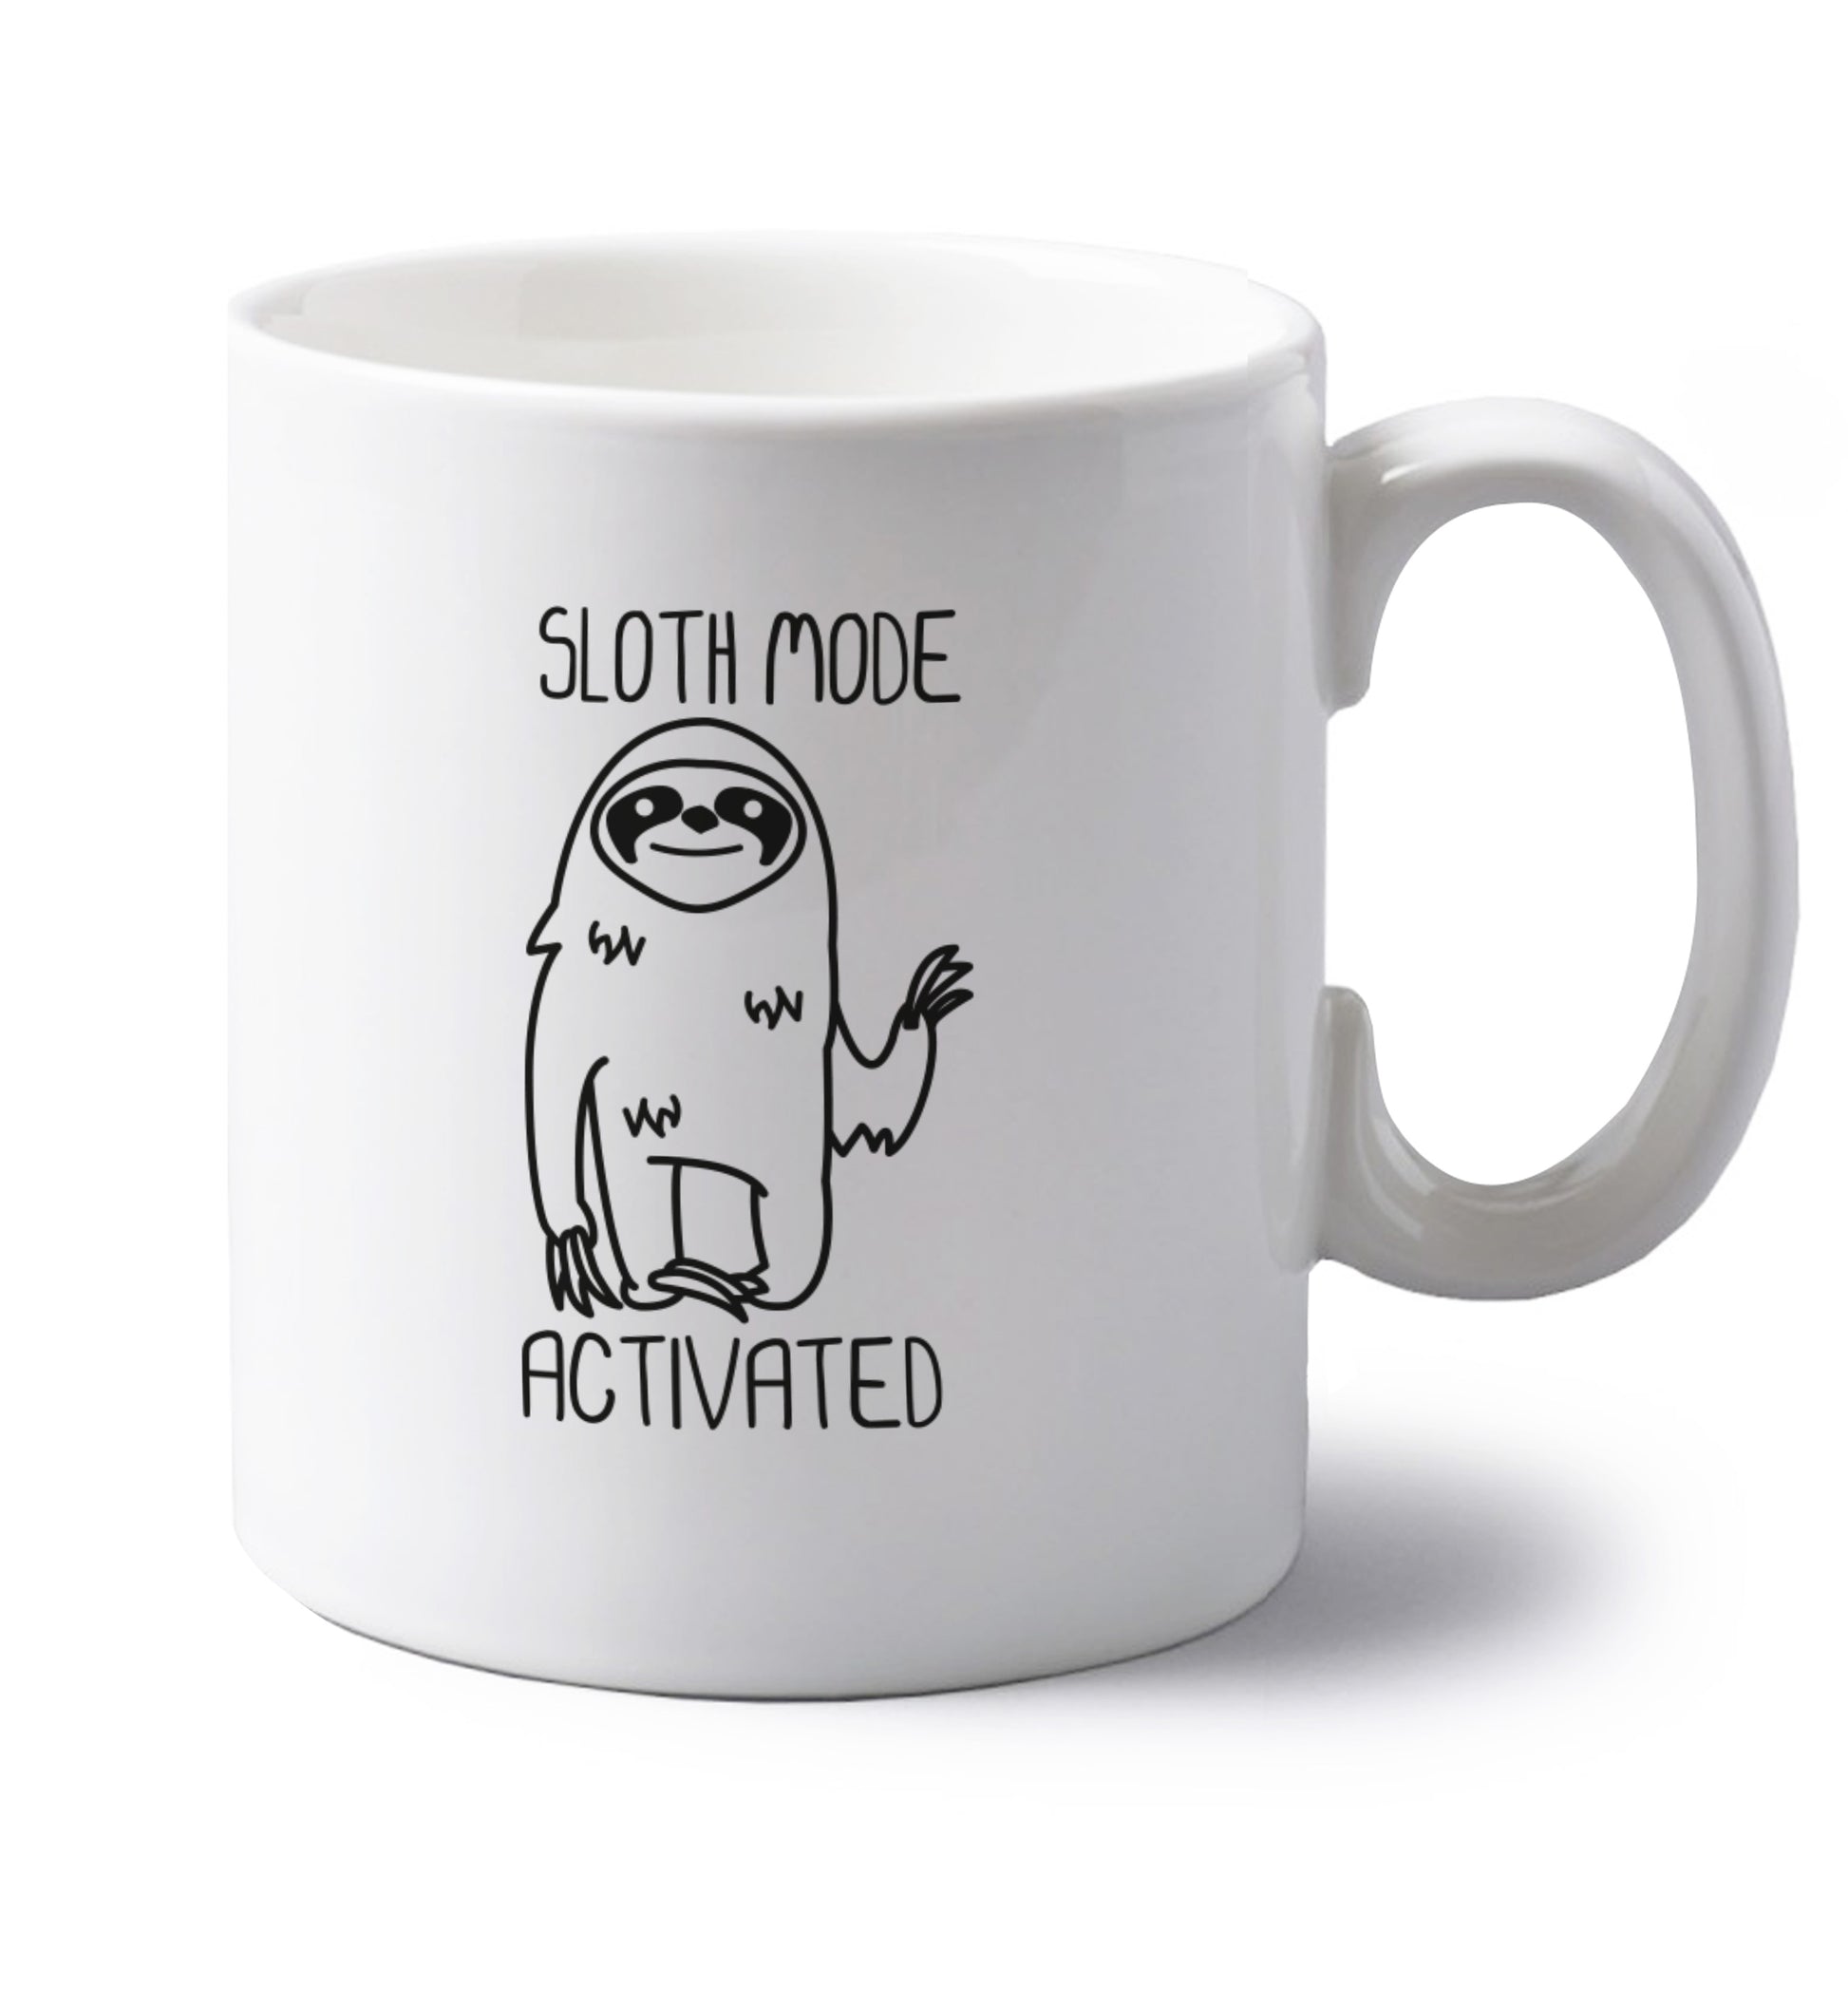 Sloth mode acitvated left handed white ceramic mug 